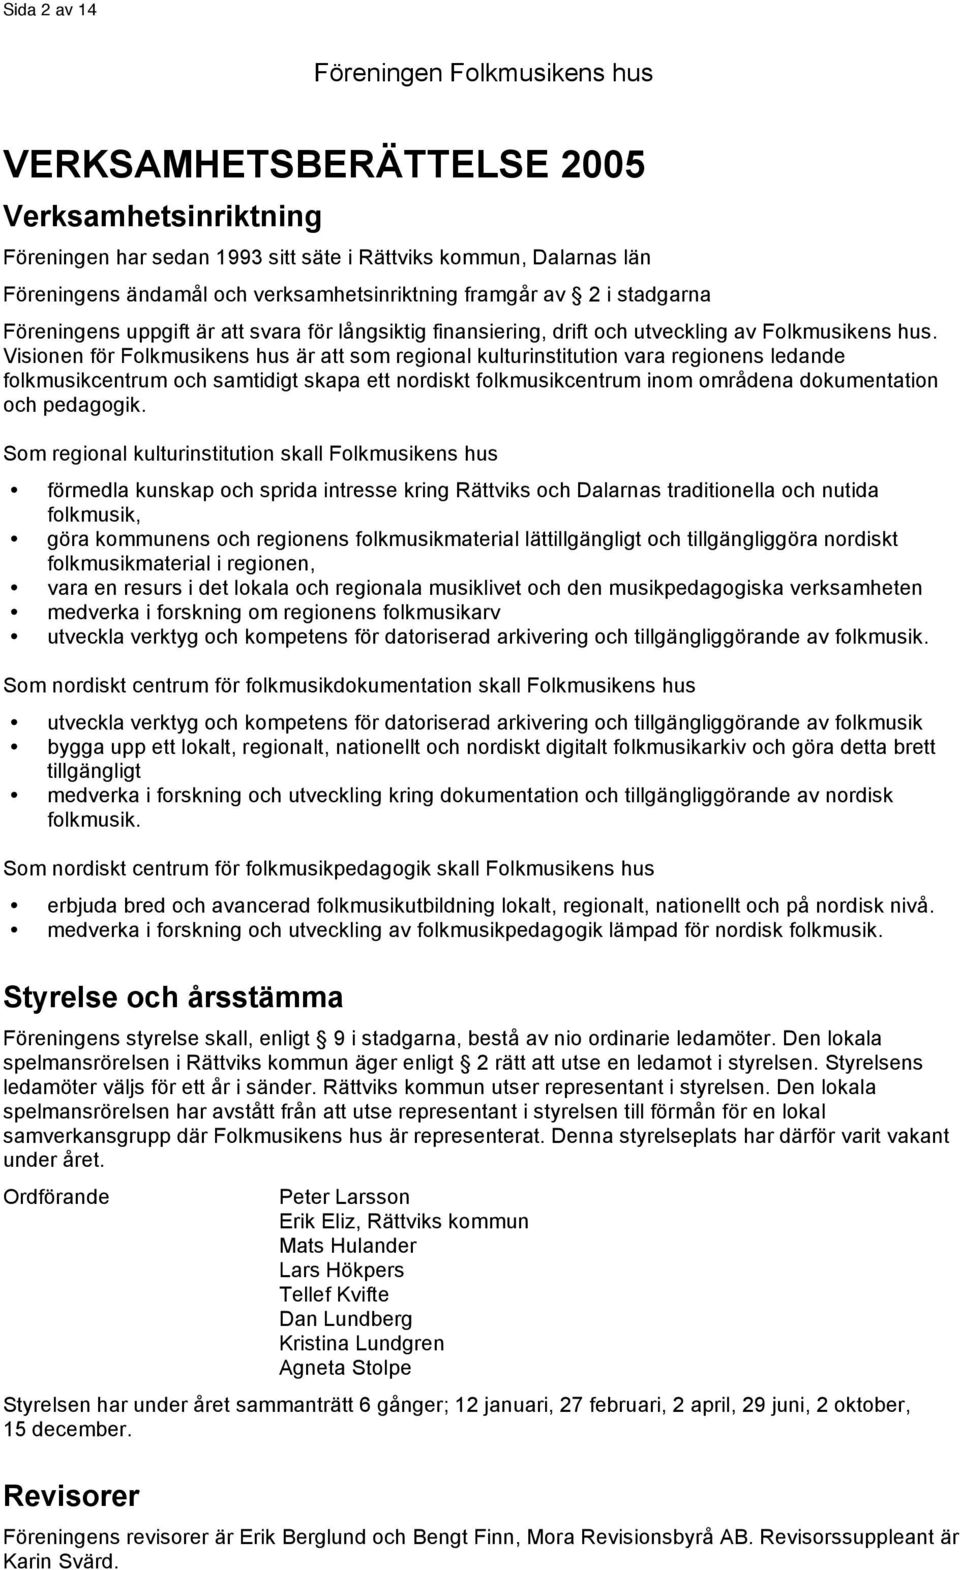 Spelmansglädje, av Hans Viksten - PDF Free Download